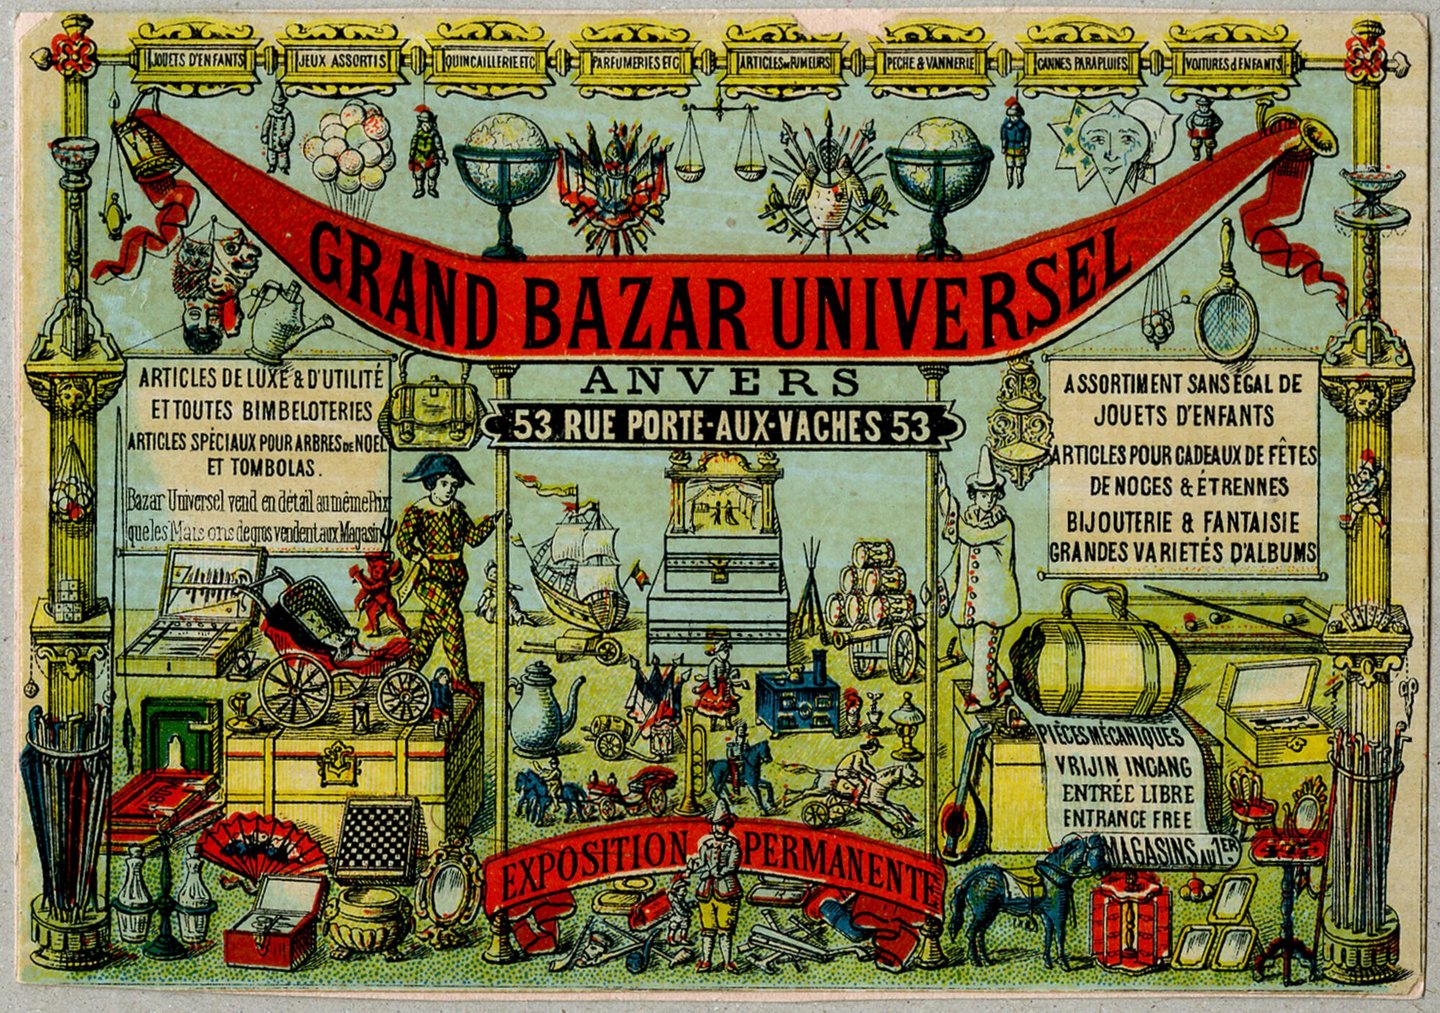 Reclamekaart voor Grand Bazar Universel in Antwerpen